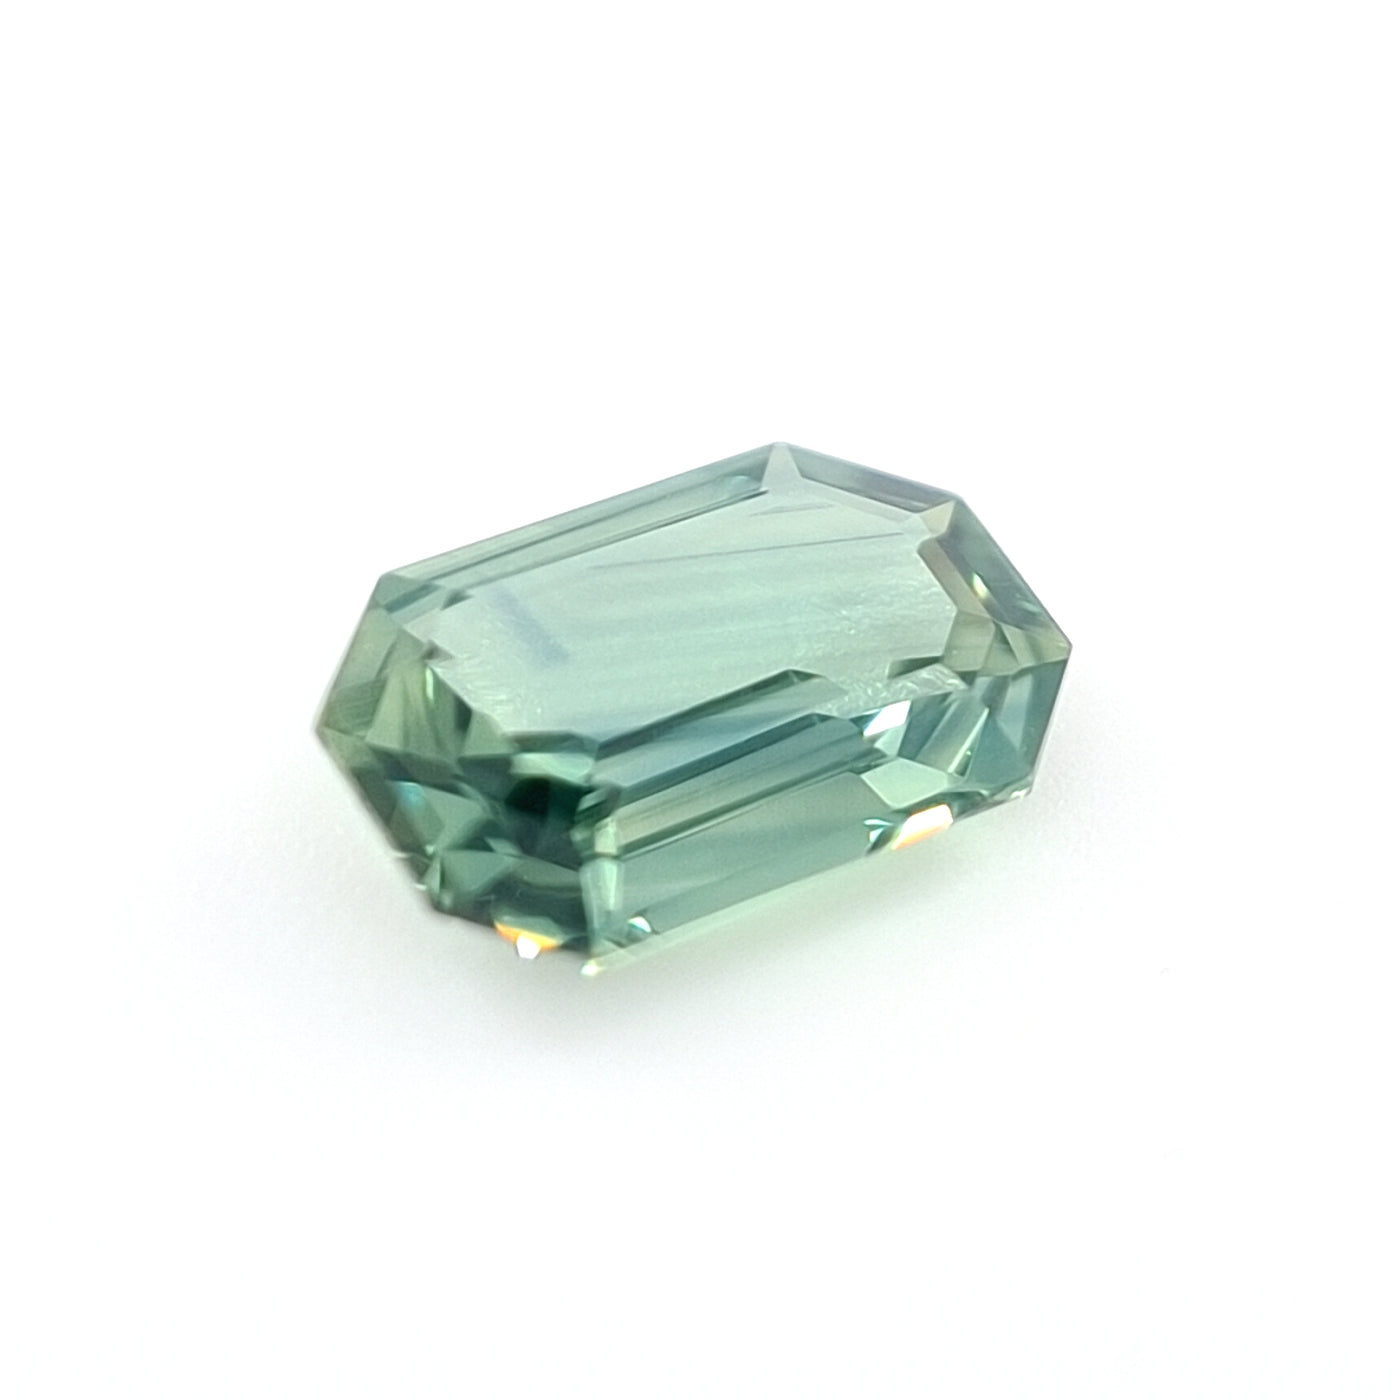 1.10ct Australian Sapphire, Teal, Green, Blue - Emerald Cut